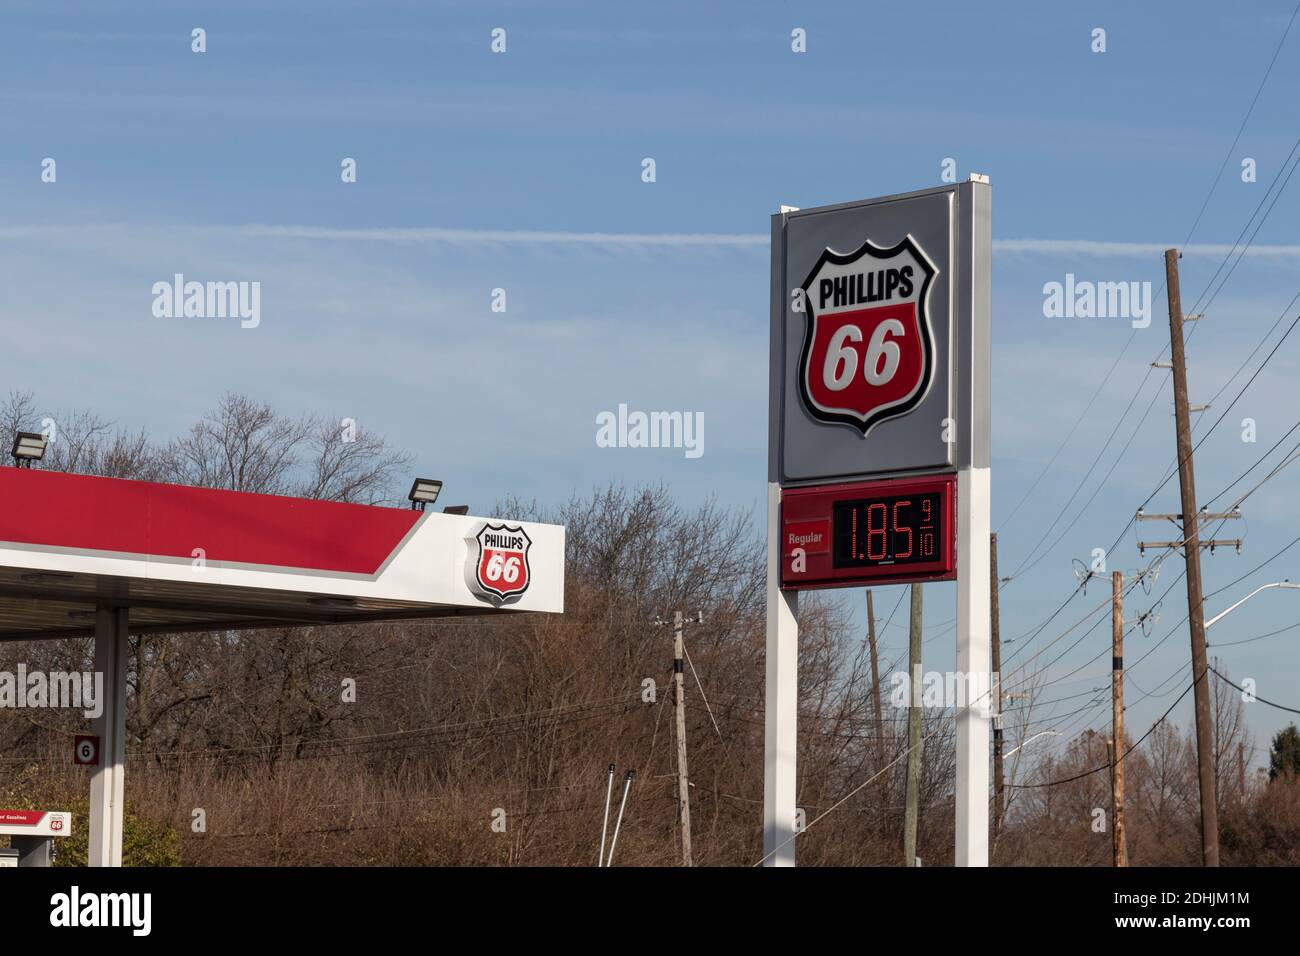 Indianapolis - Circa décembre 2020: Phillips 66 Company point de vente. Phillips 66 est une société américaine d'énergie et un raffineur de pétrole indépendant. Banque D'Images